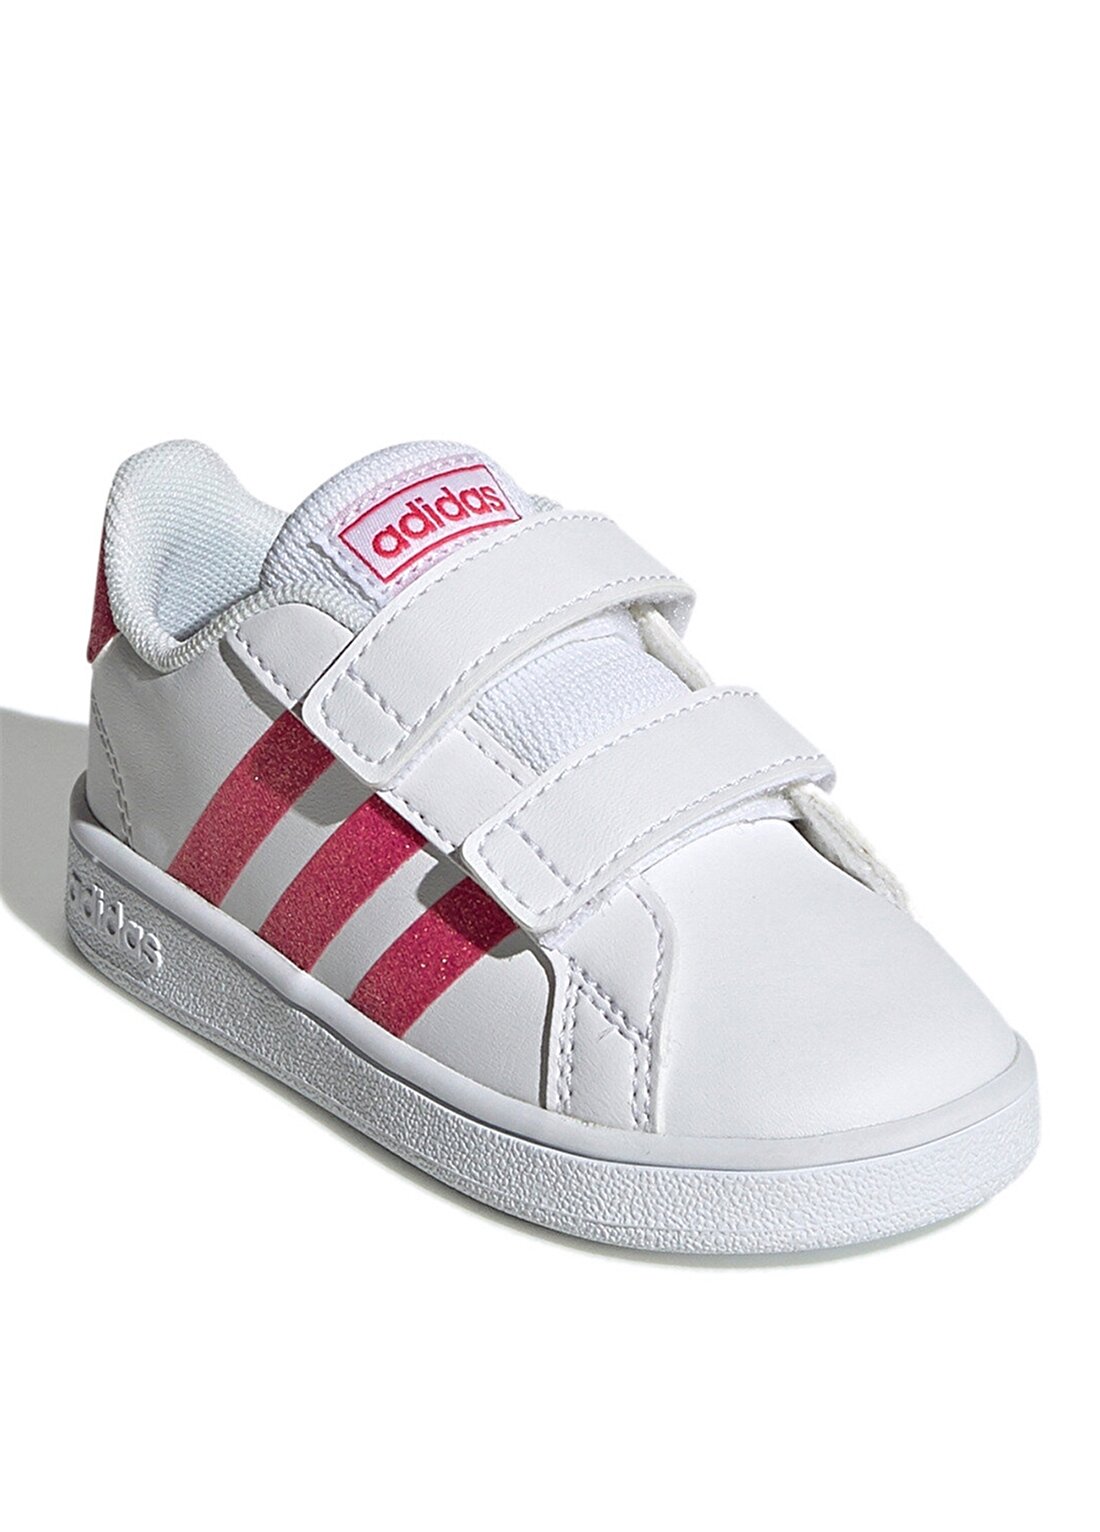 Adidas Grand Court I Beyaz - Pembe Kız Çocuk Yürüyüş Ayakkabısı